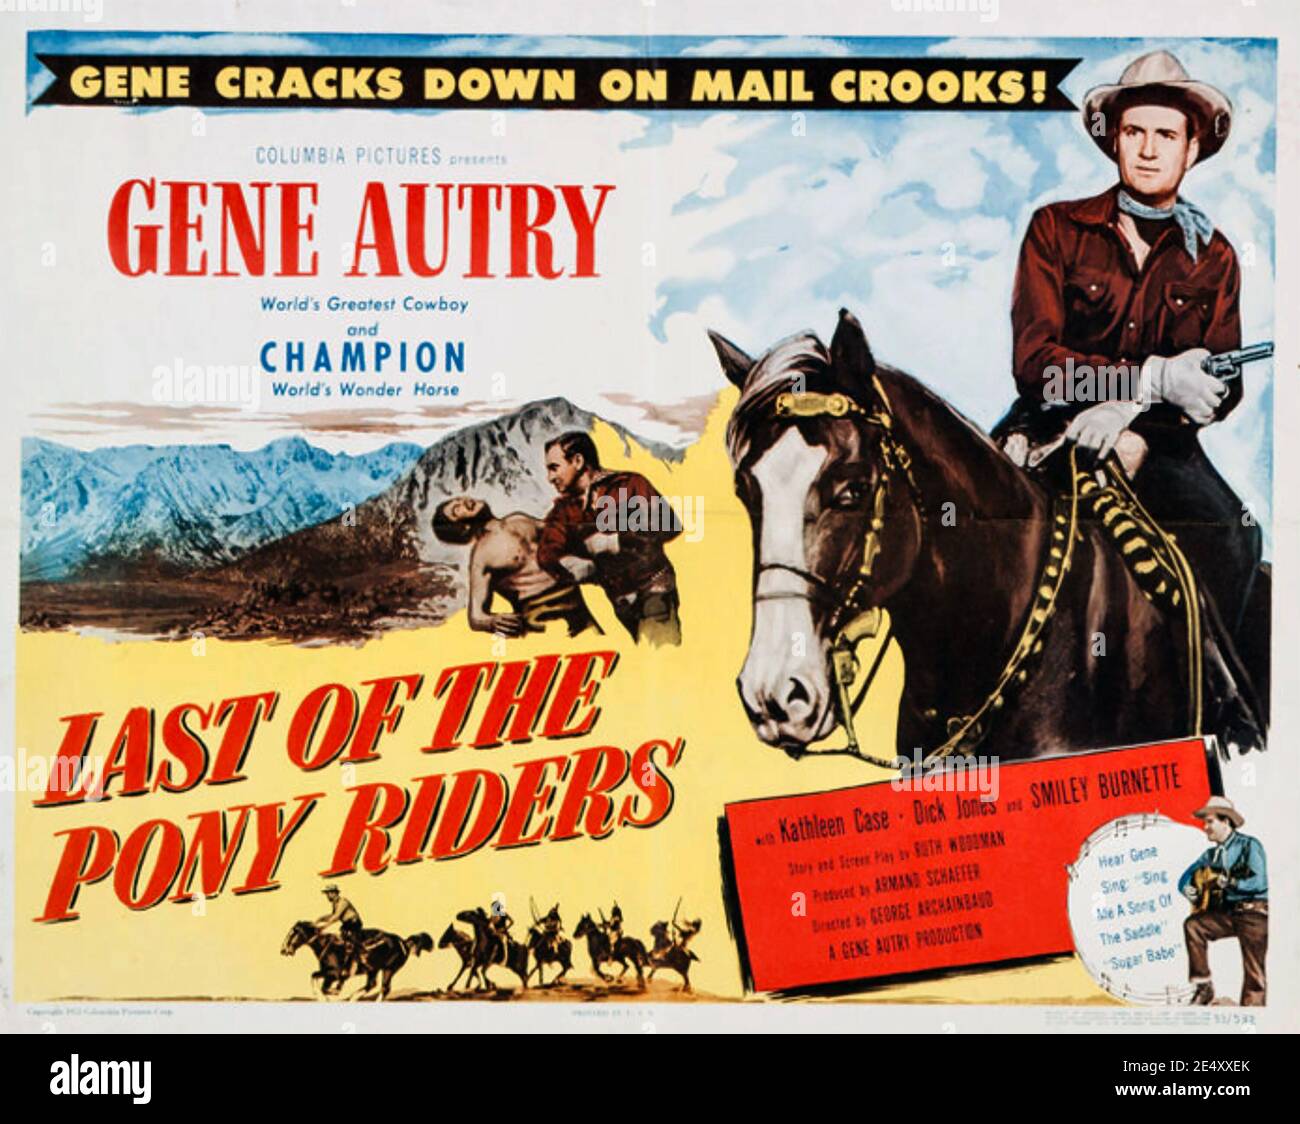 EL ÚLTIMO DE LOS CORREDORES DE PONY 1953 Columbia Pictures película con Gen Autry Foto de stock